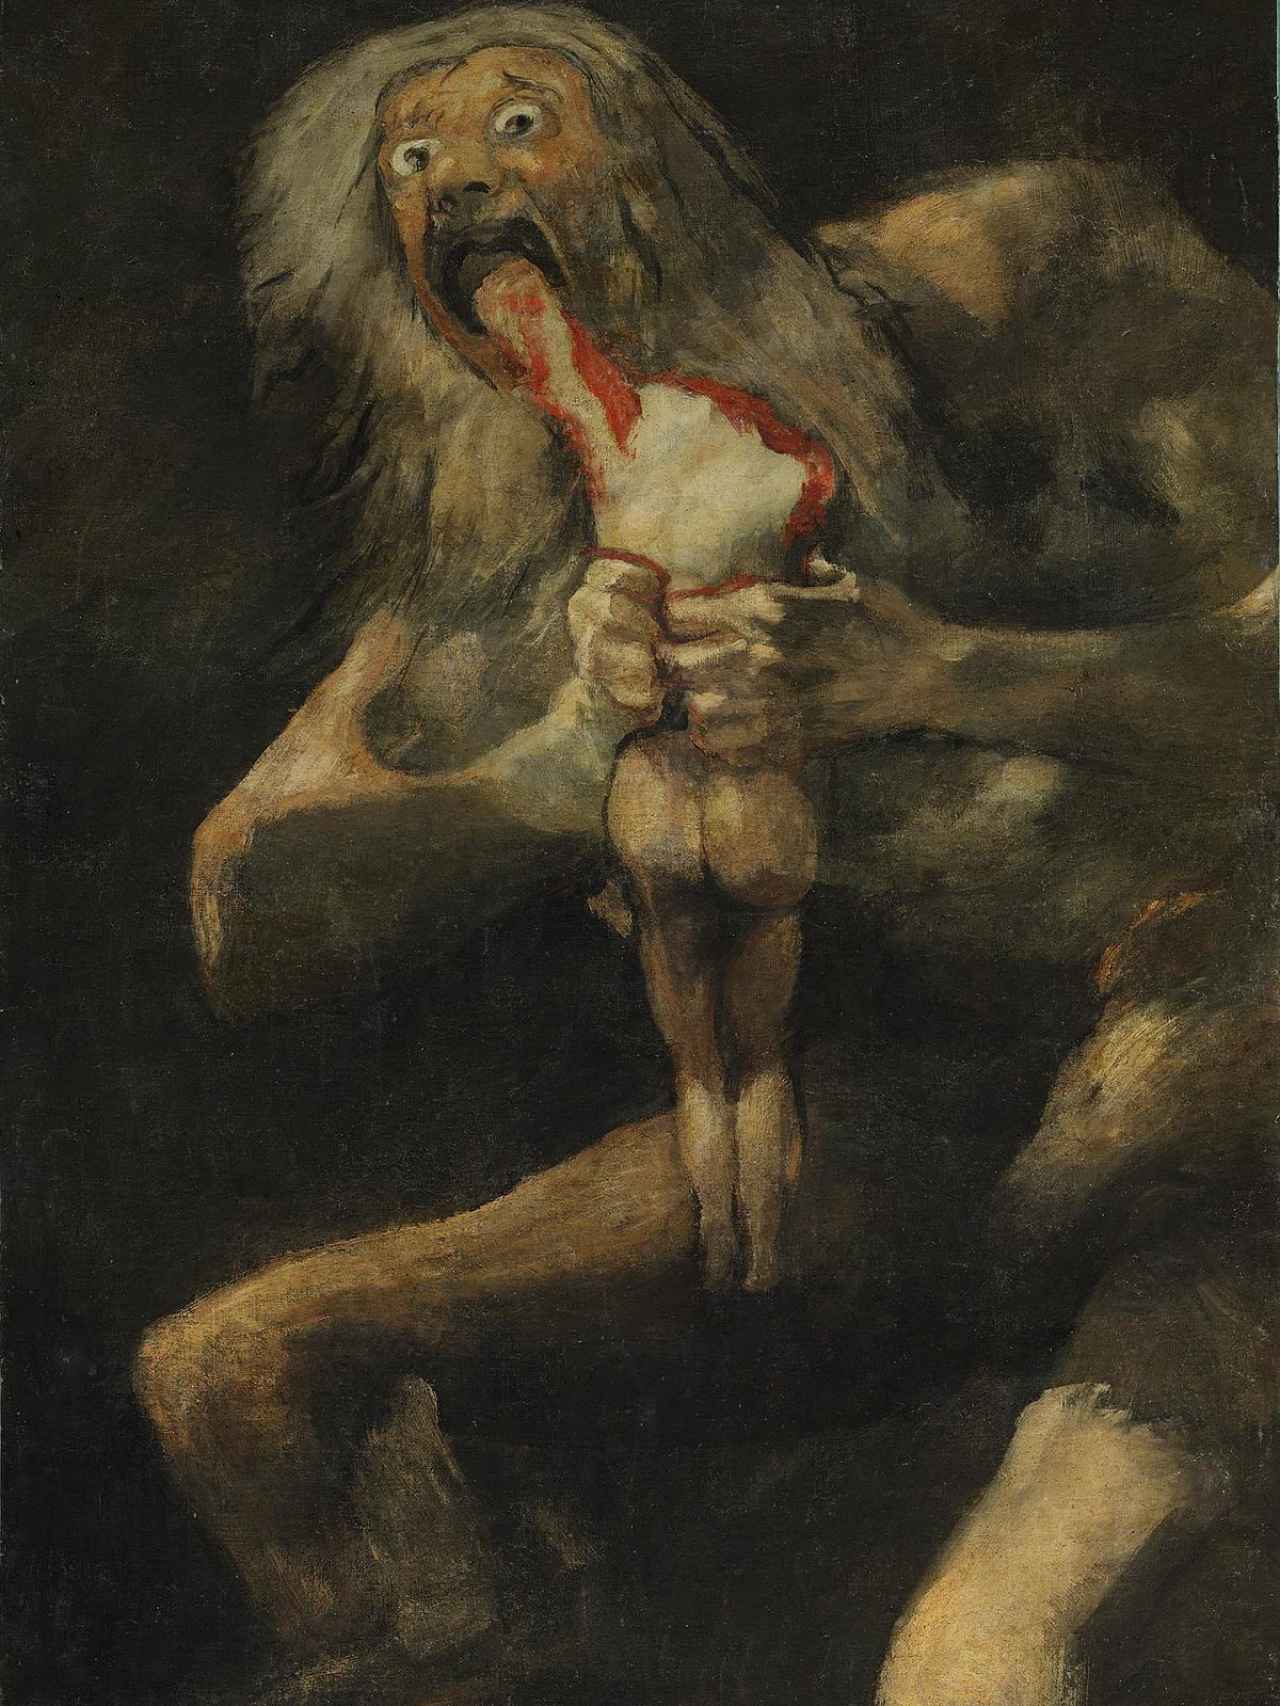 Saturno devorando a su hijo, una de las pinturas negras de Goya, en el Museo del Prado.